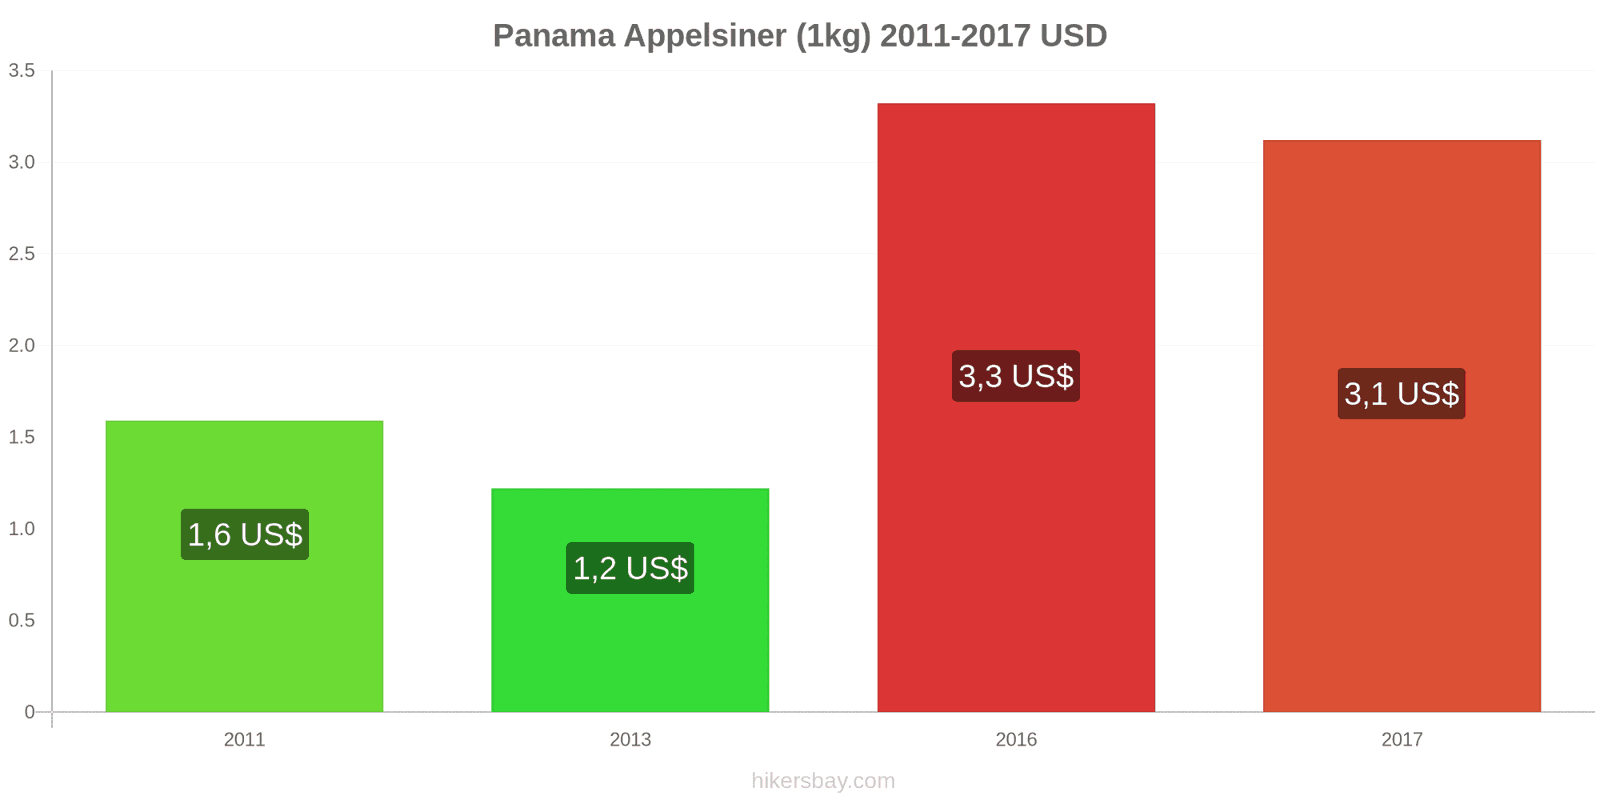 Panama prisændringer Appelsiner (1kg) hikersbay.com